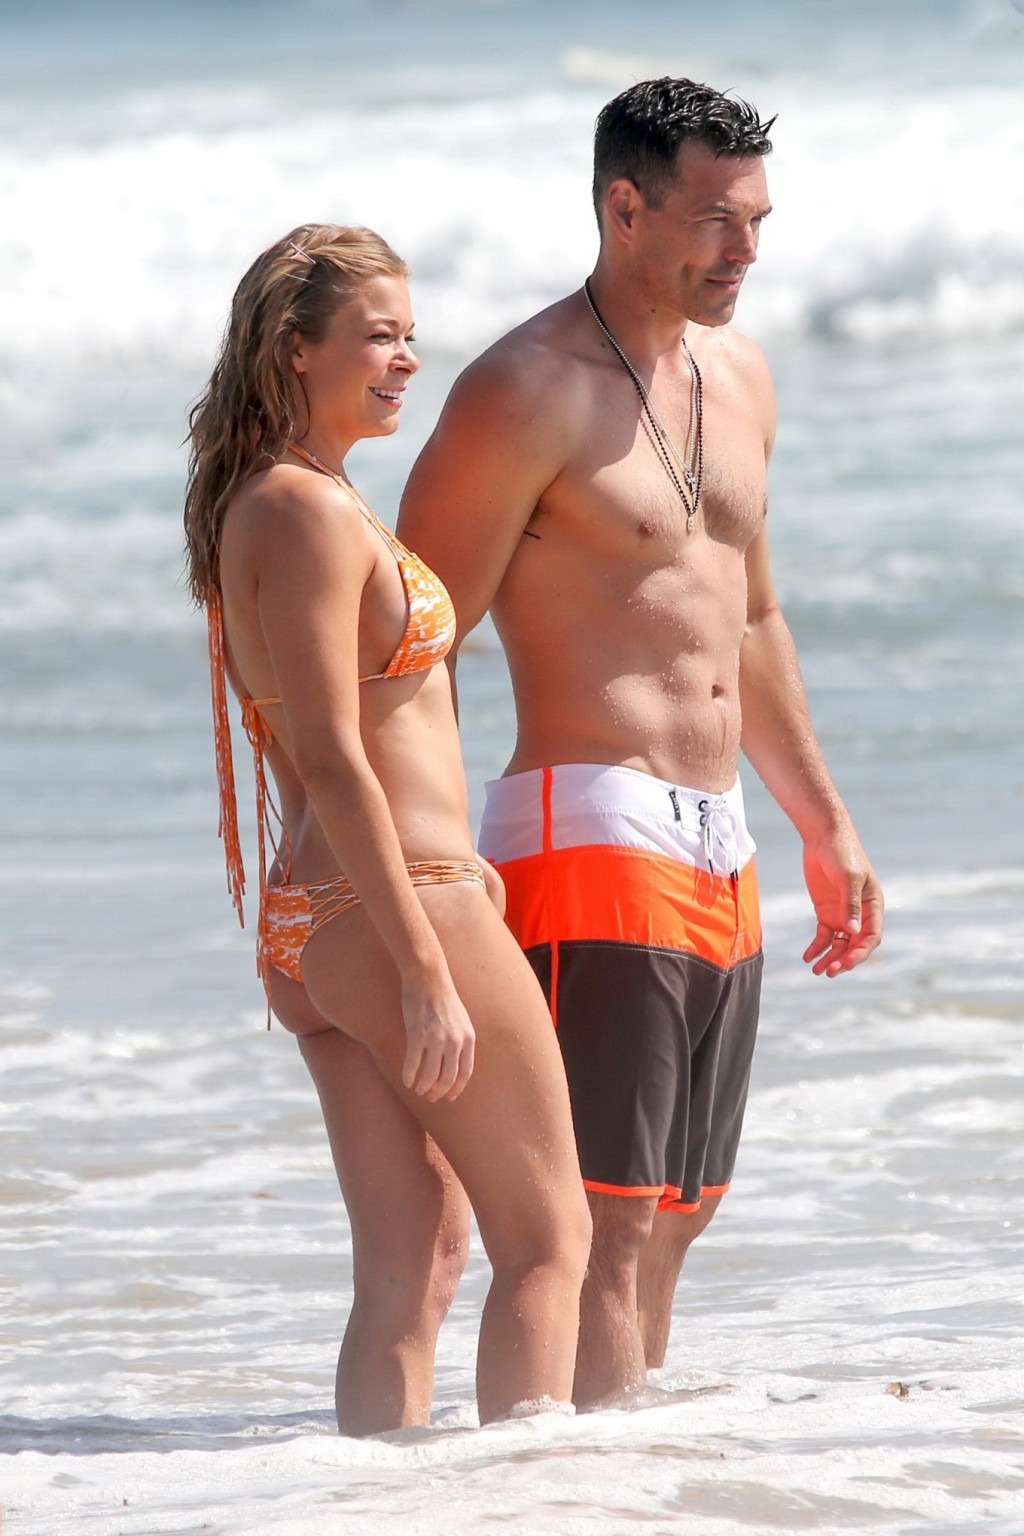 Leann rimes luciendo un diminuto bikini naranja en la playa de los angeles
 #75228082